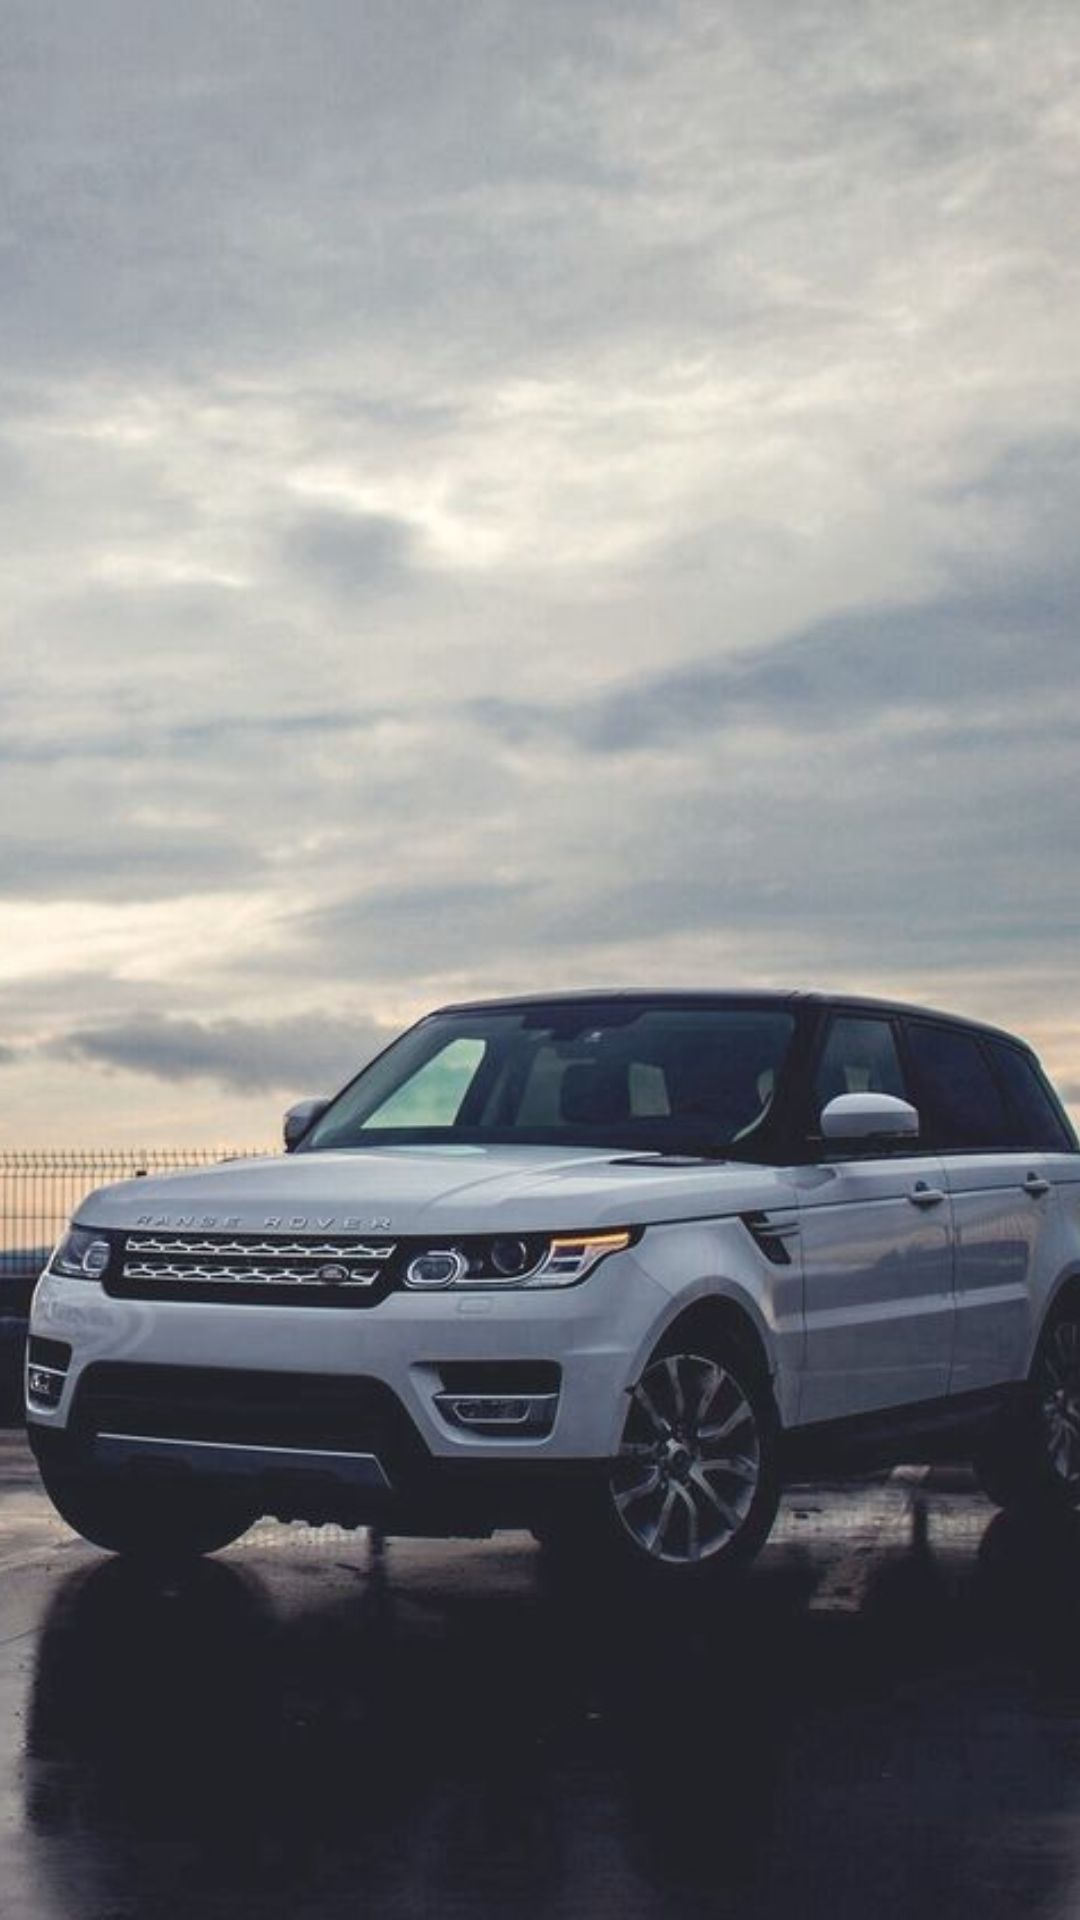 Range Rover Wallpapers - Top 35 Best Range Rover Backgrounds Download